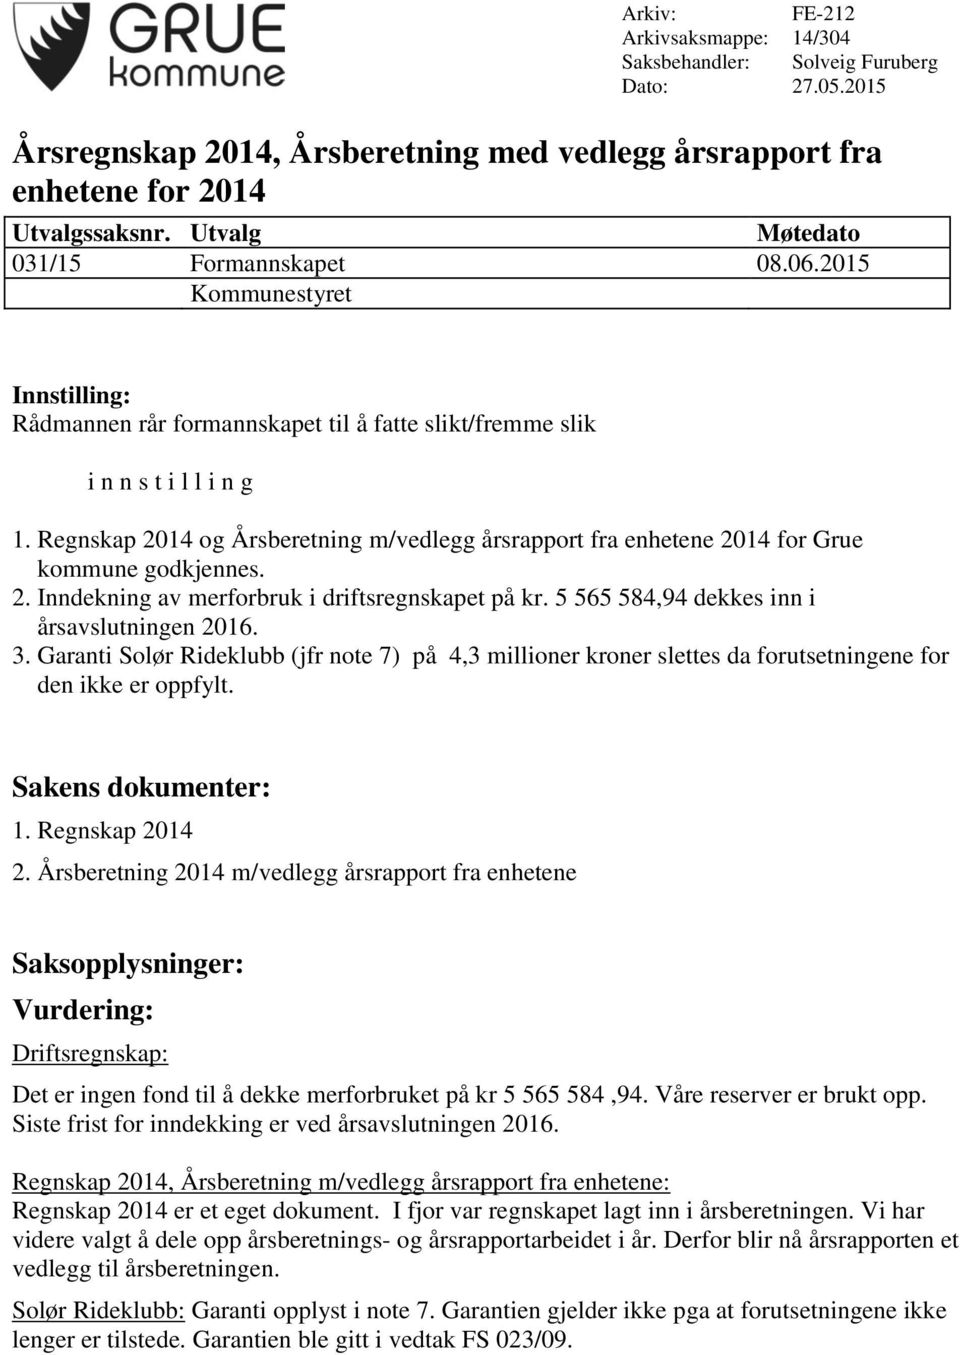 Regnskap 2014 og Årsberetning m/vedlegg årsrapport fra enhetene 2014 for Grue kommune godkjennes. 2. Inndekning av merforbruk i driftsregnskapet på kr. 5 565 584,94 dekkes inn i årsavslutningen 2016.